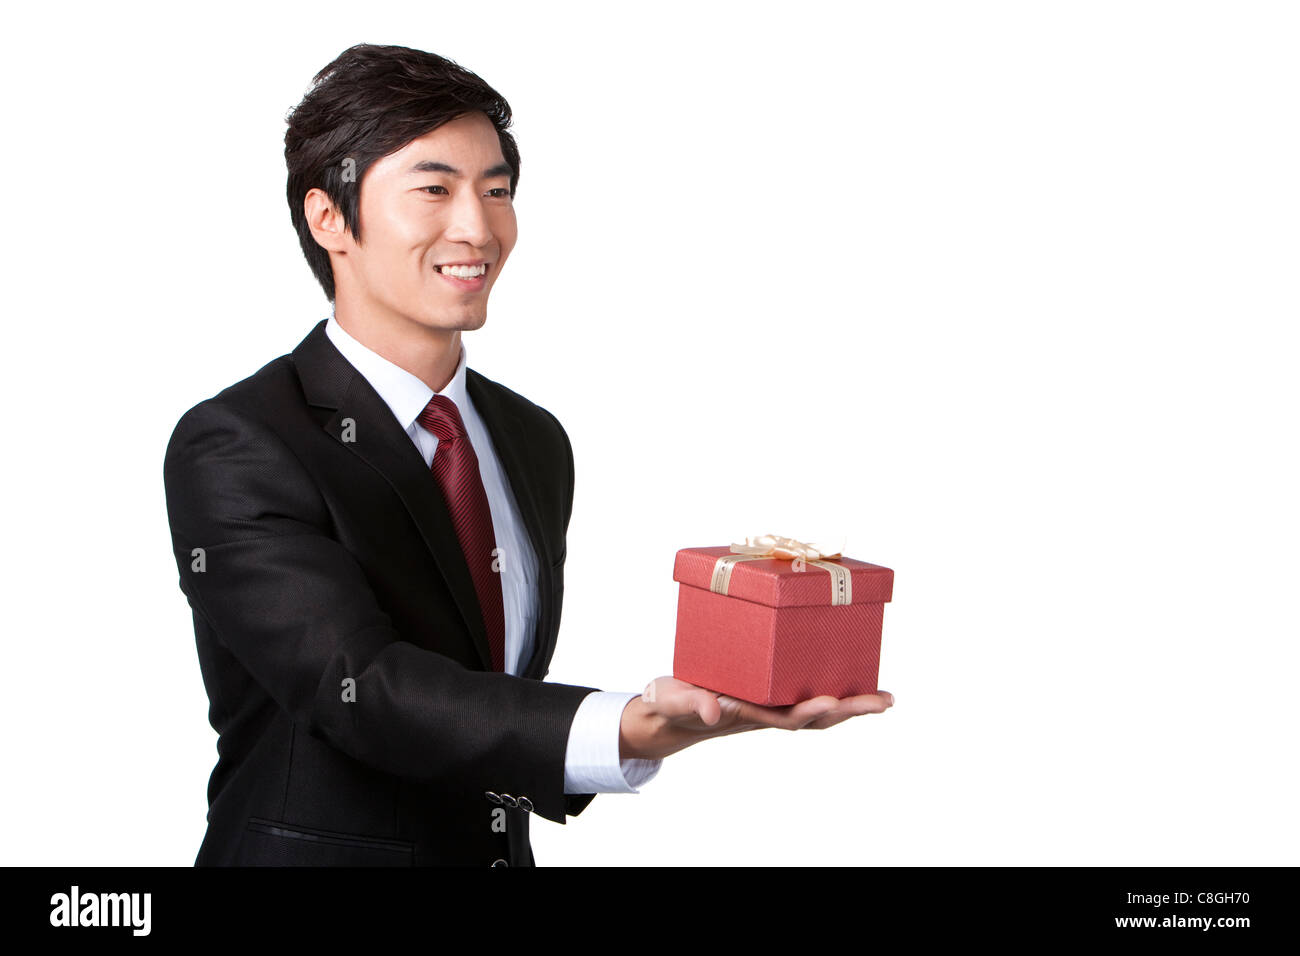 Geschäftsmann hält ein Geschenk Stockfotografie - Alamy